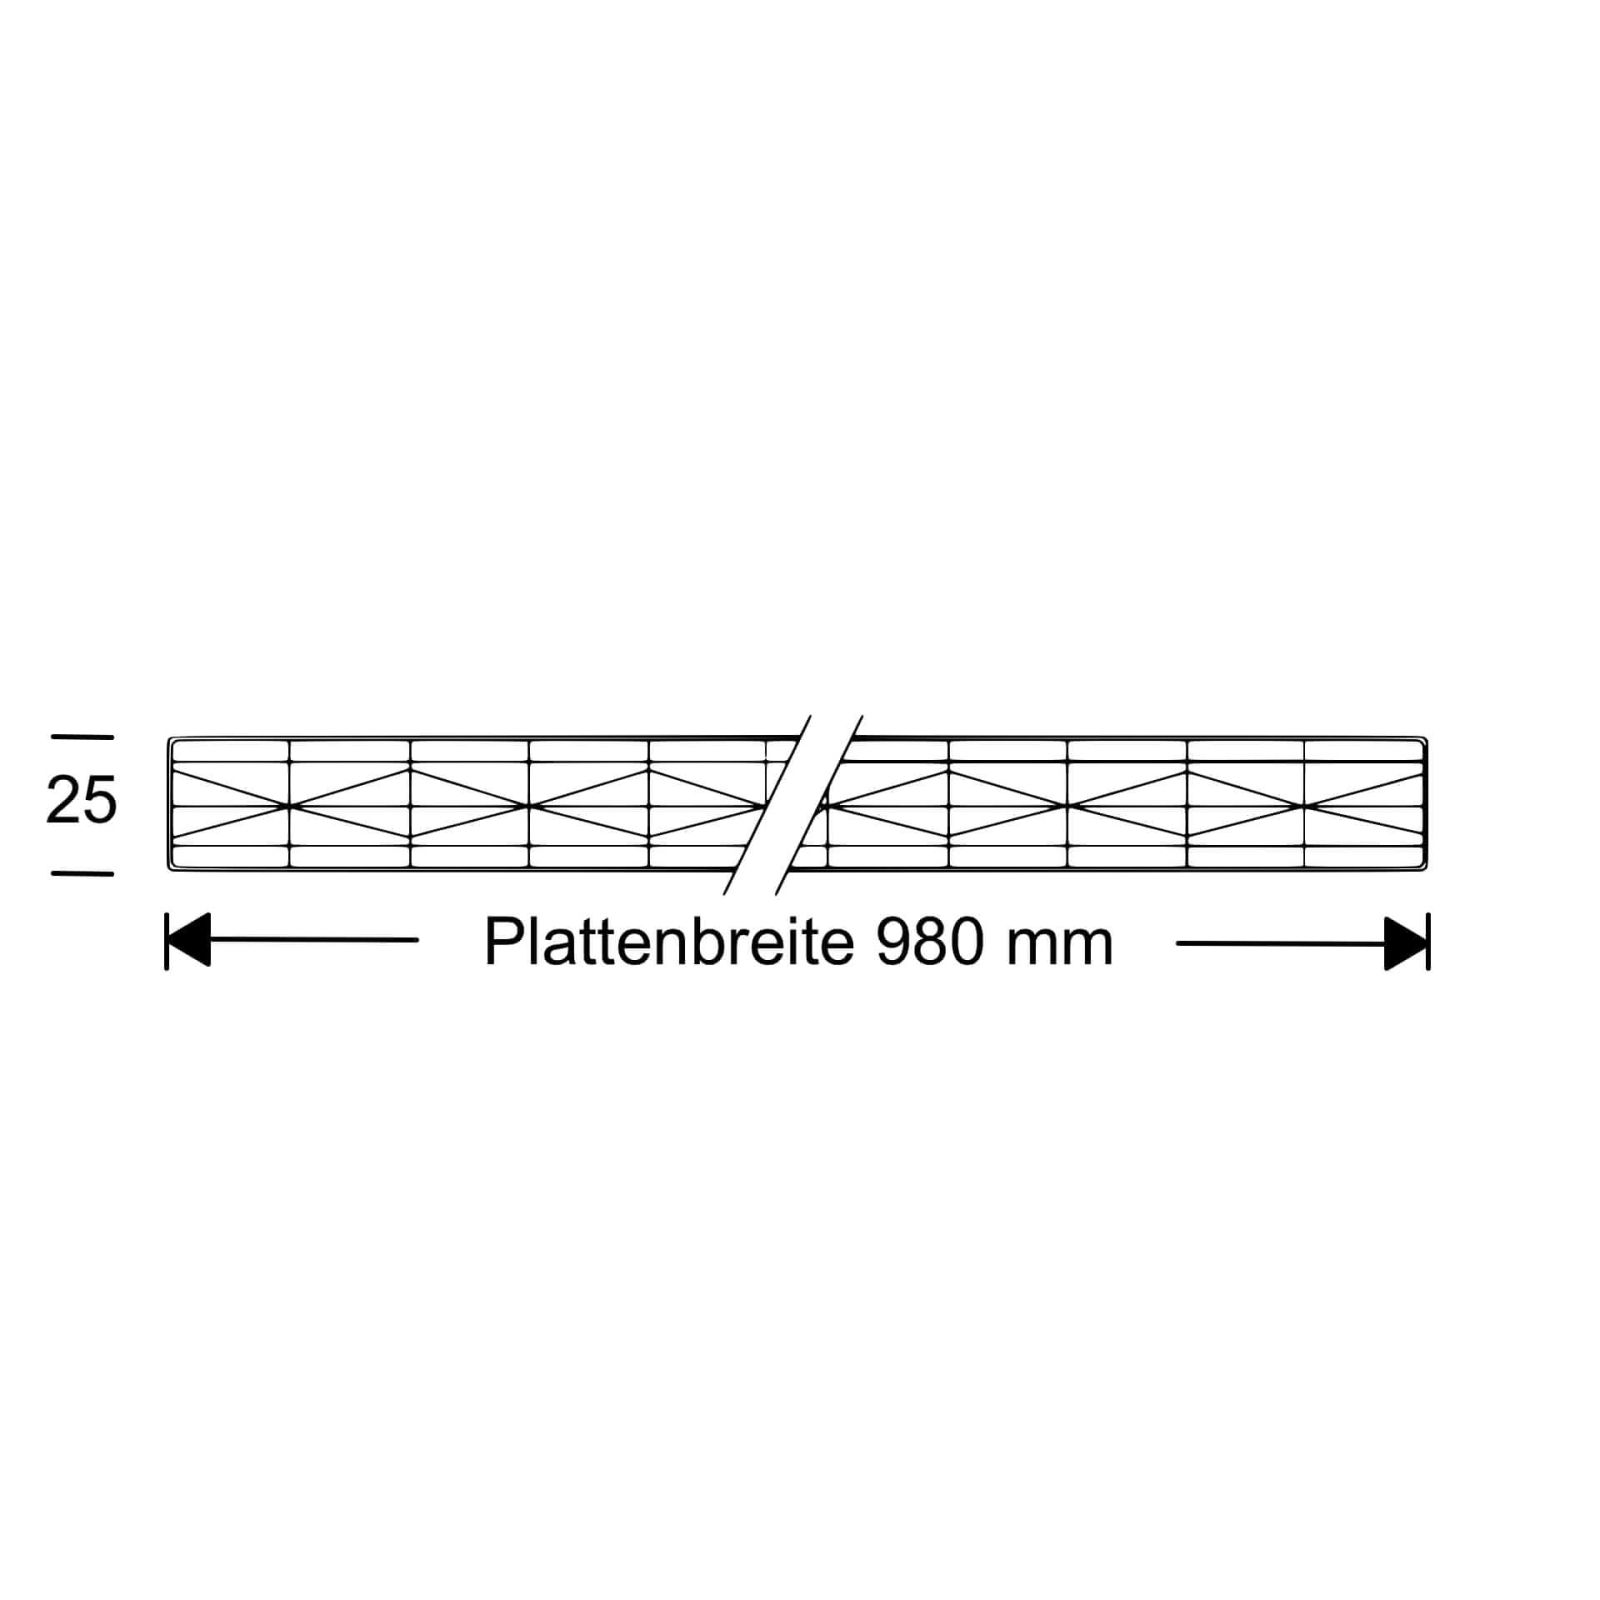 Polycarbonat Stegplatte | 25 mm | Profil Mendiger | Sparpaket | Plattenbreite 980 mm | Opal Weiß | Extra stark | Breite 3,10 m | Länge 2,00 m #10